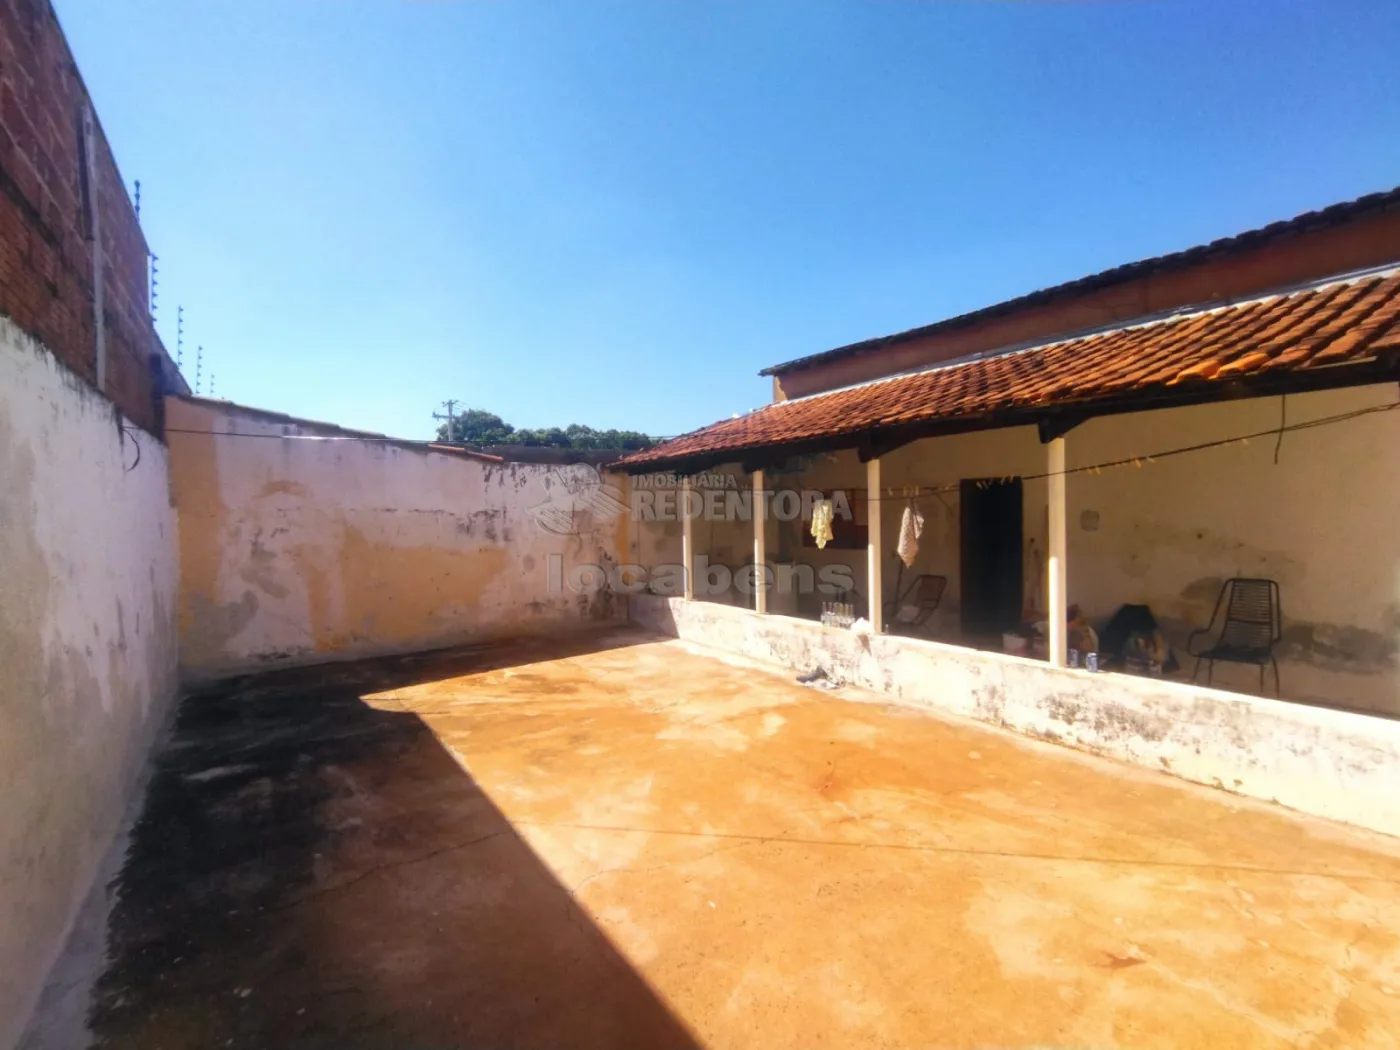 Comprar Casa / Padrão em São José do Rio Preto apenas R$ 190.000,00 - Foto 3